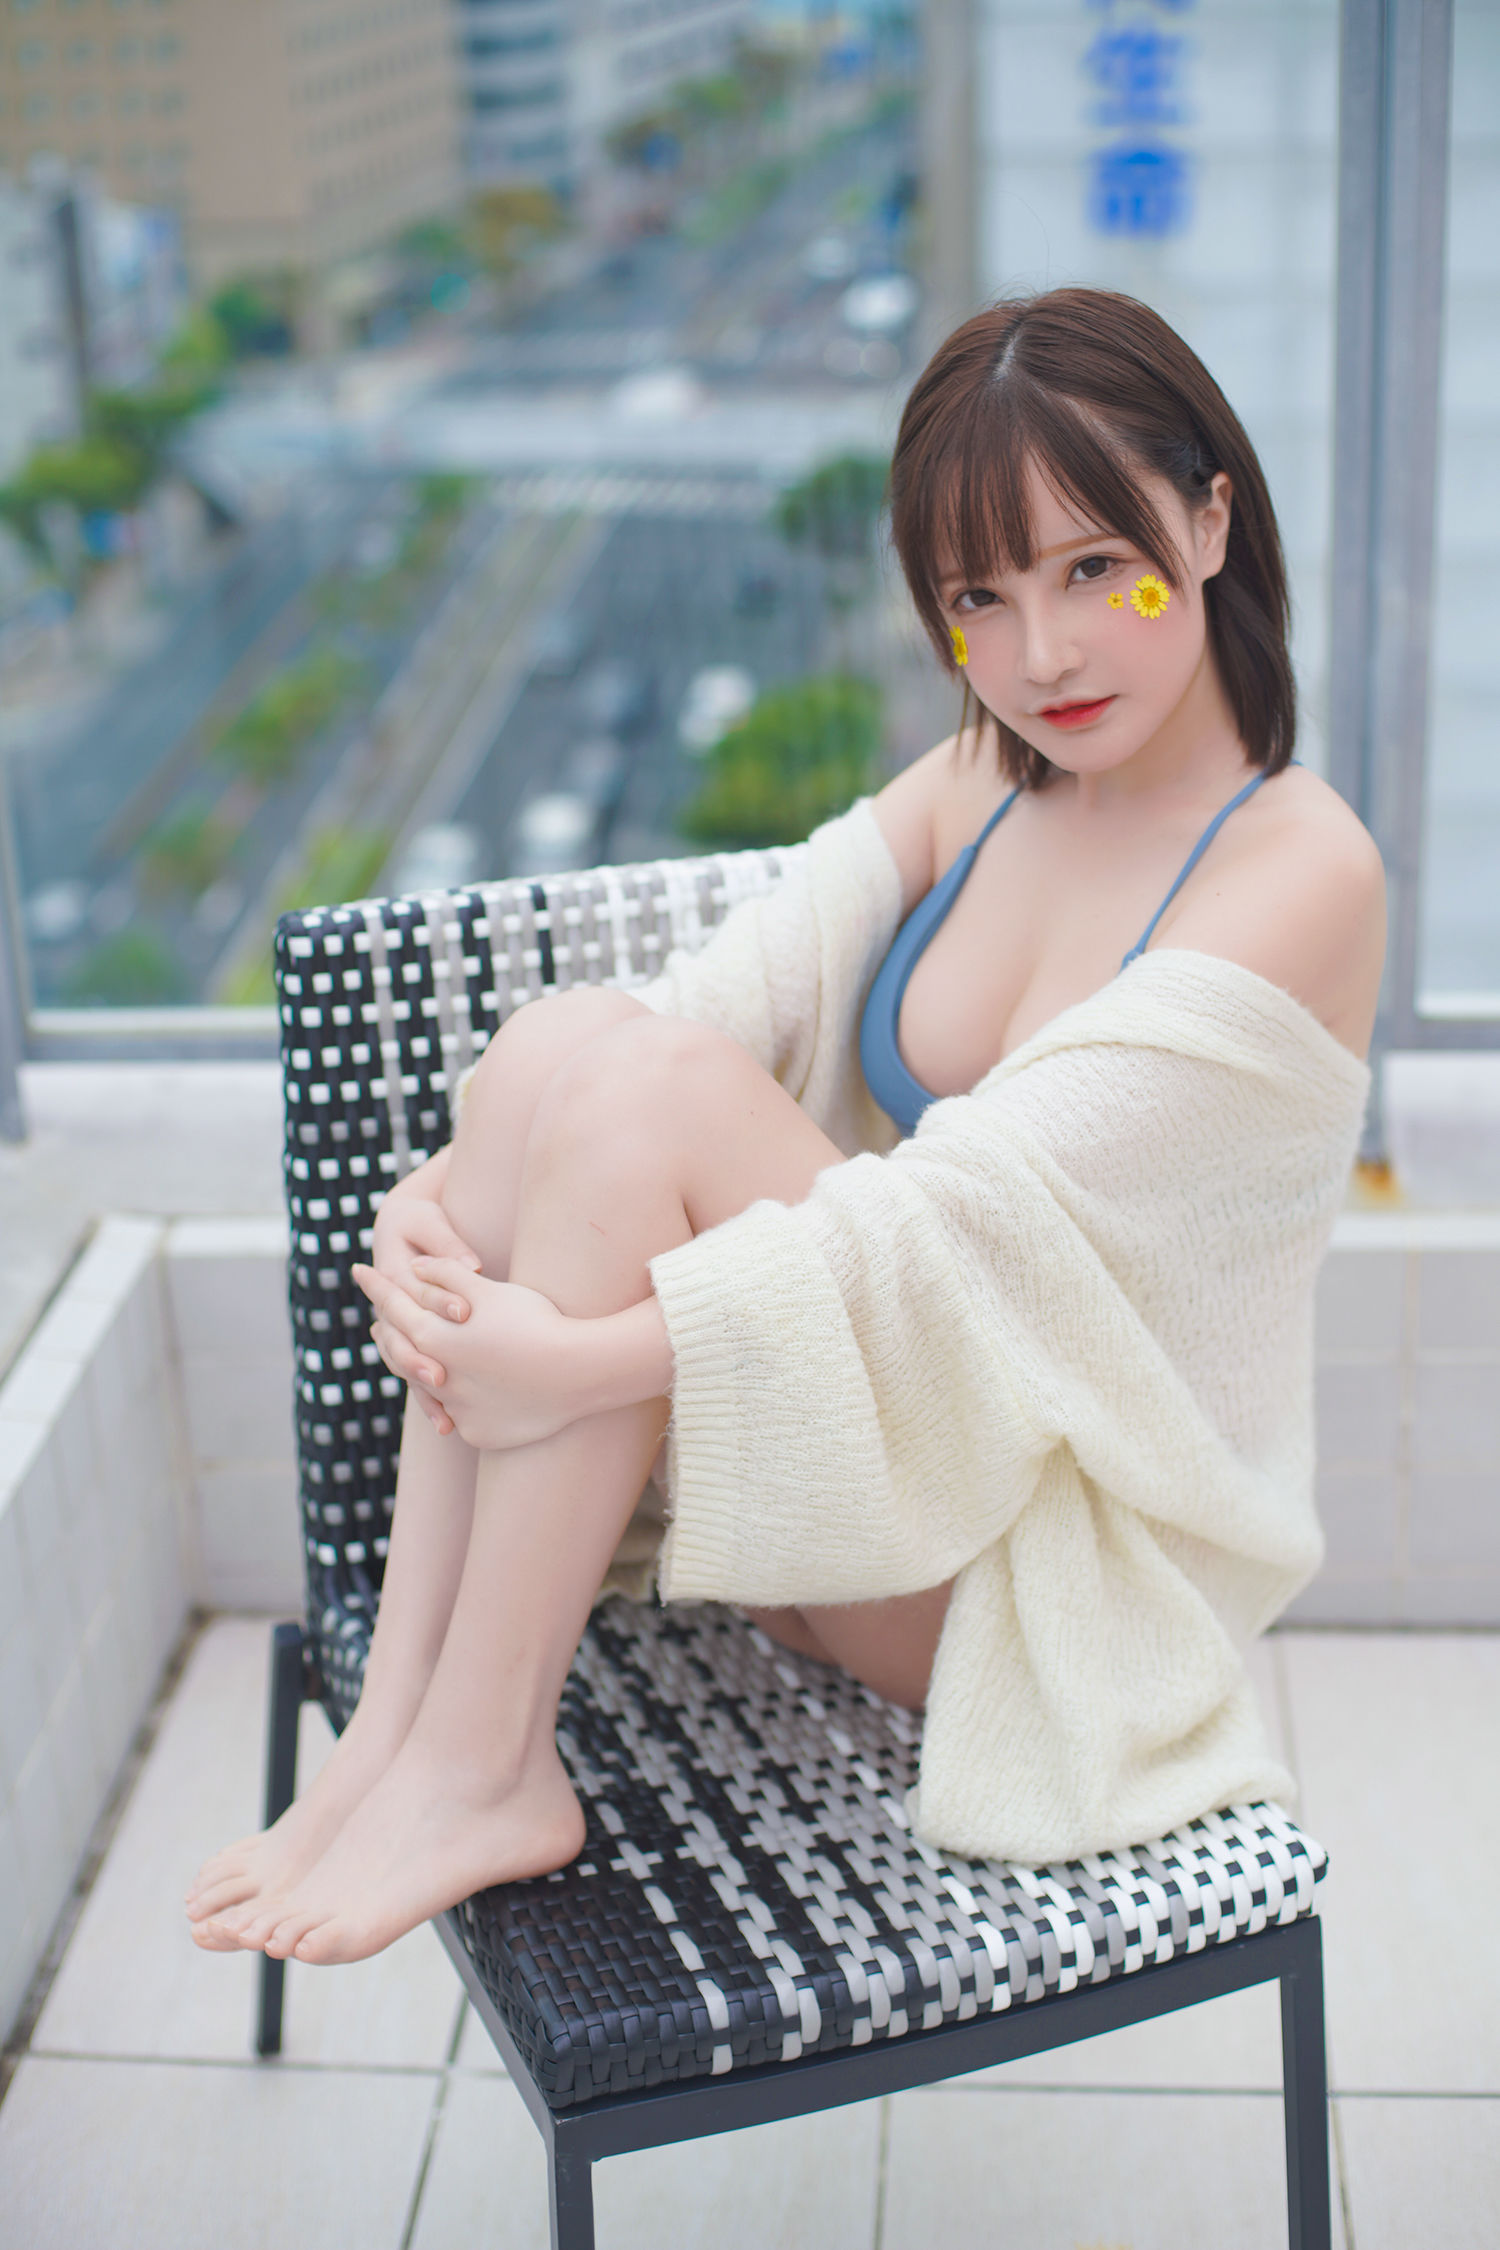 People 1500x2250 Senyamiku model Asian Chinese short hair bikini looking at viewer cleavage women